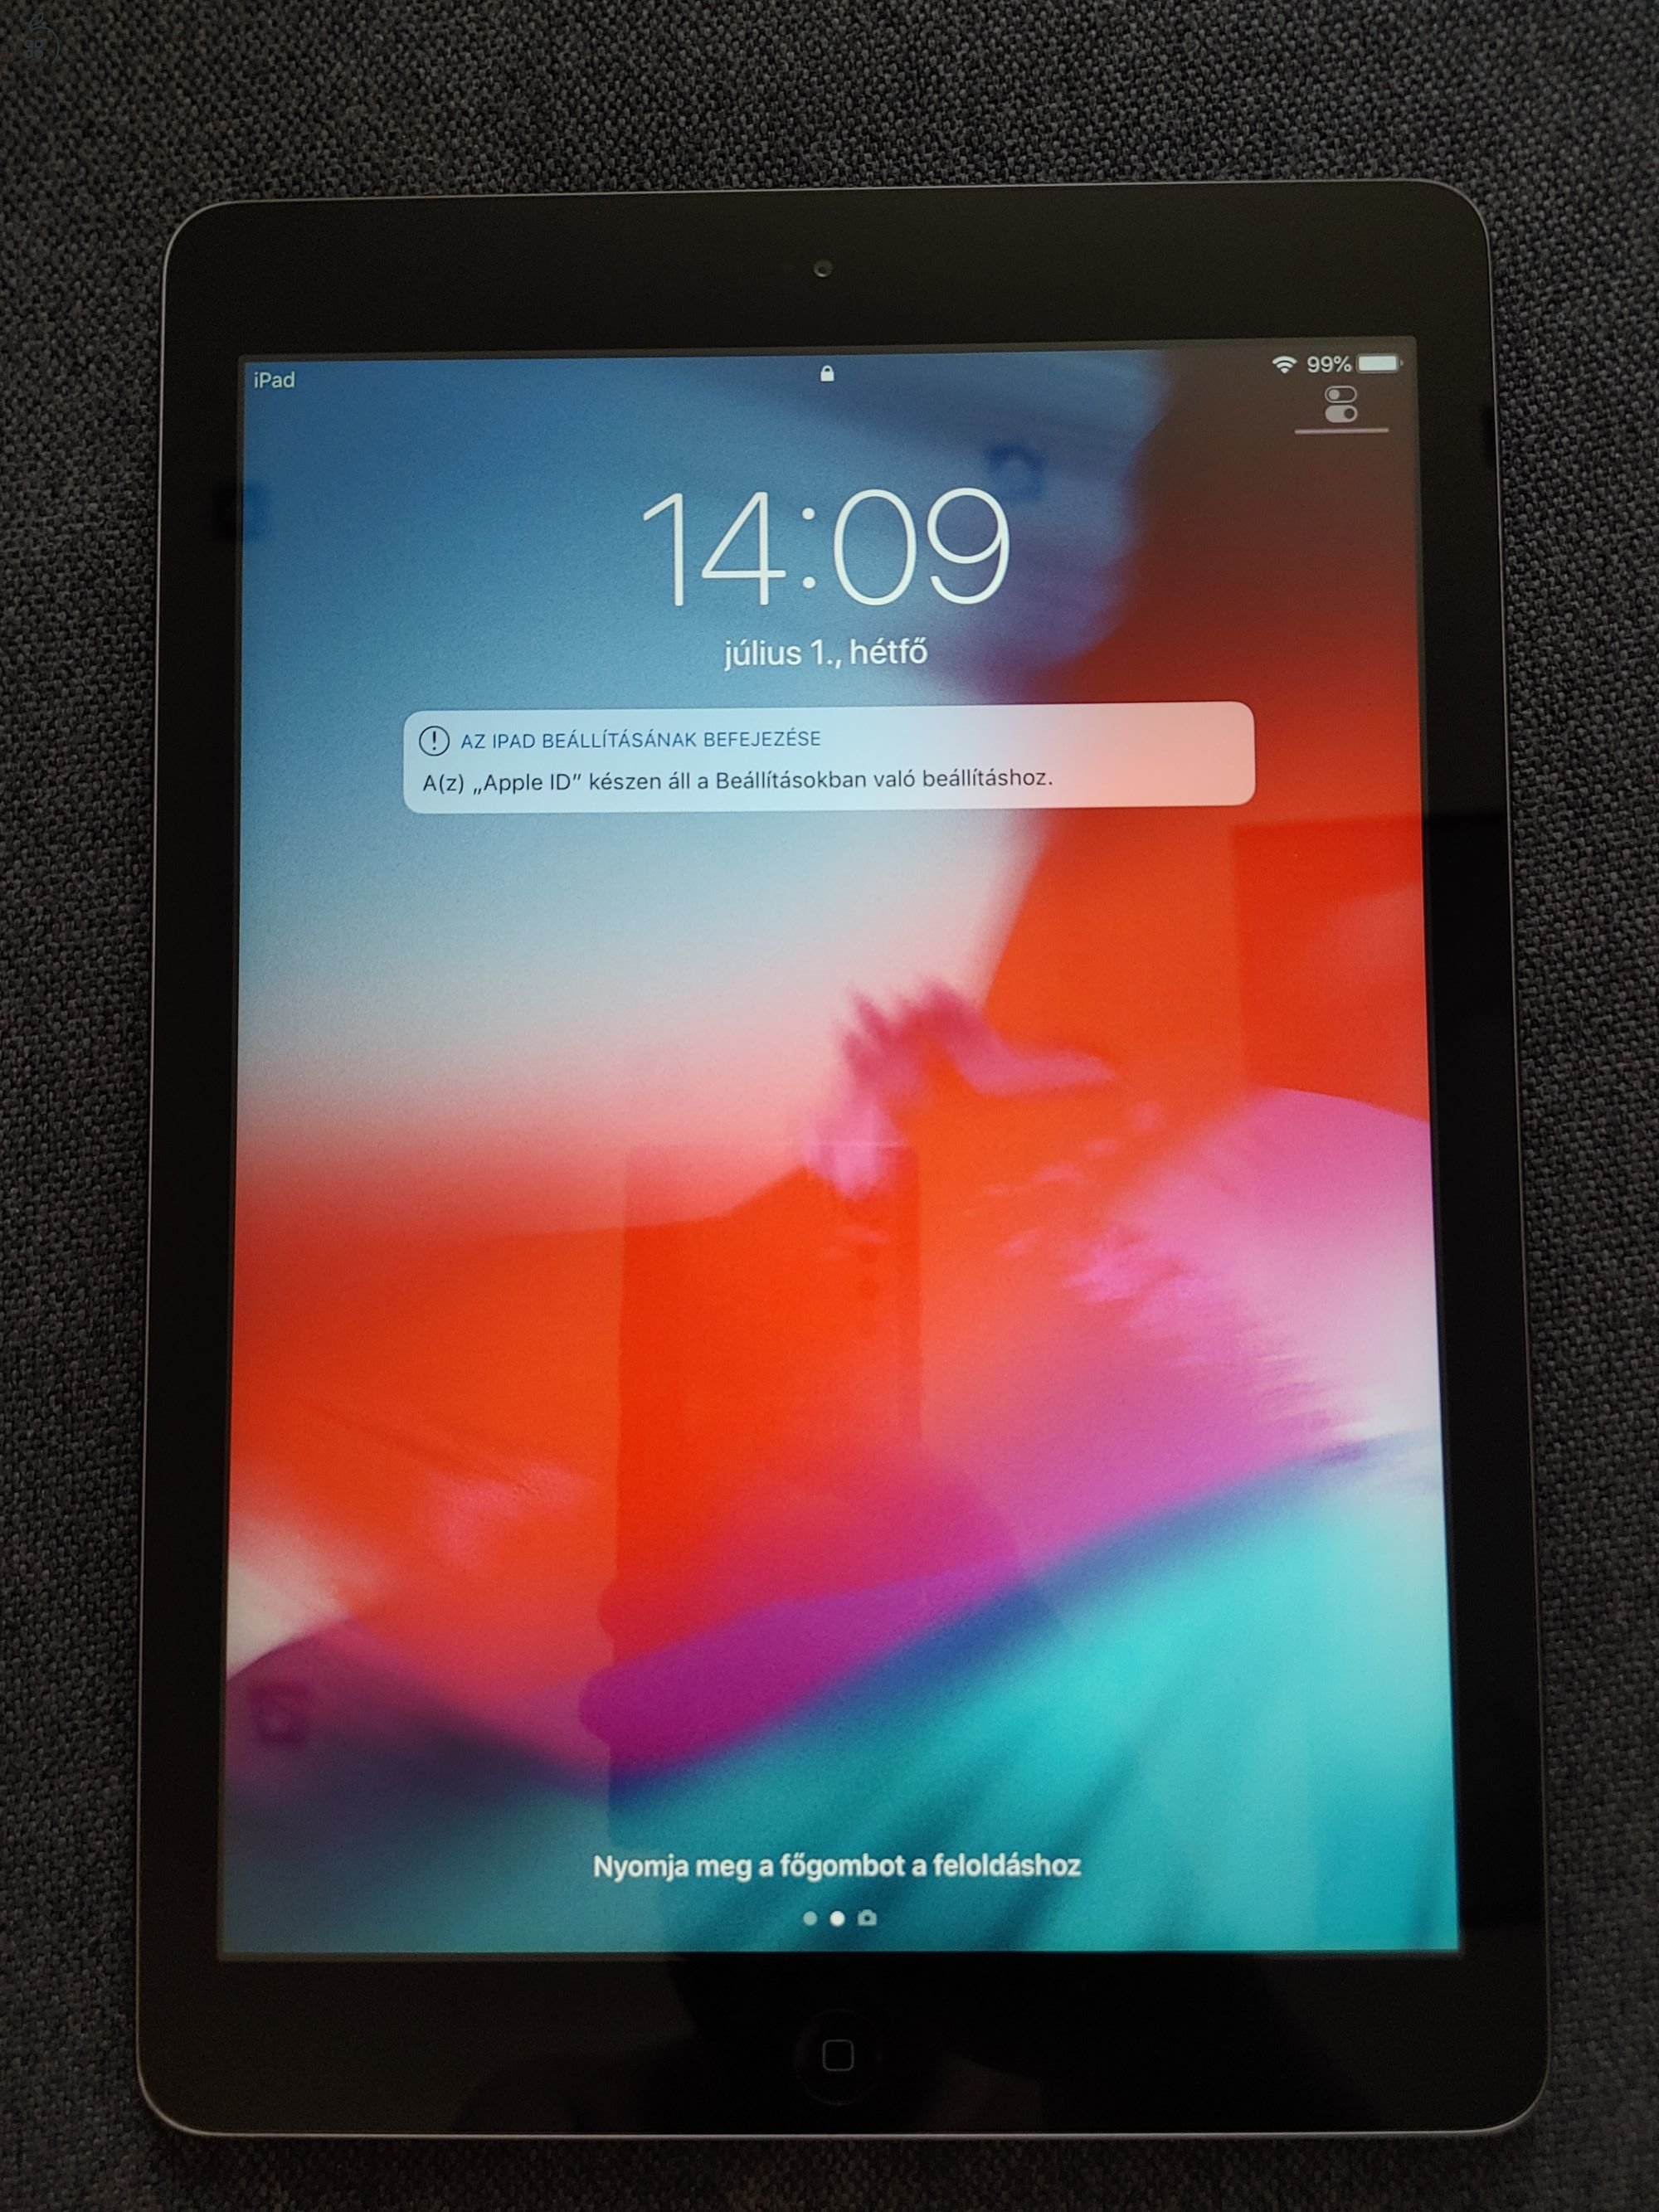 iPad Air 16 GB (MD785FD/B) ezüst szürke